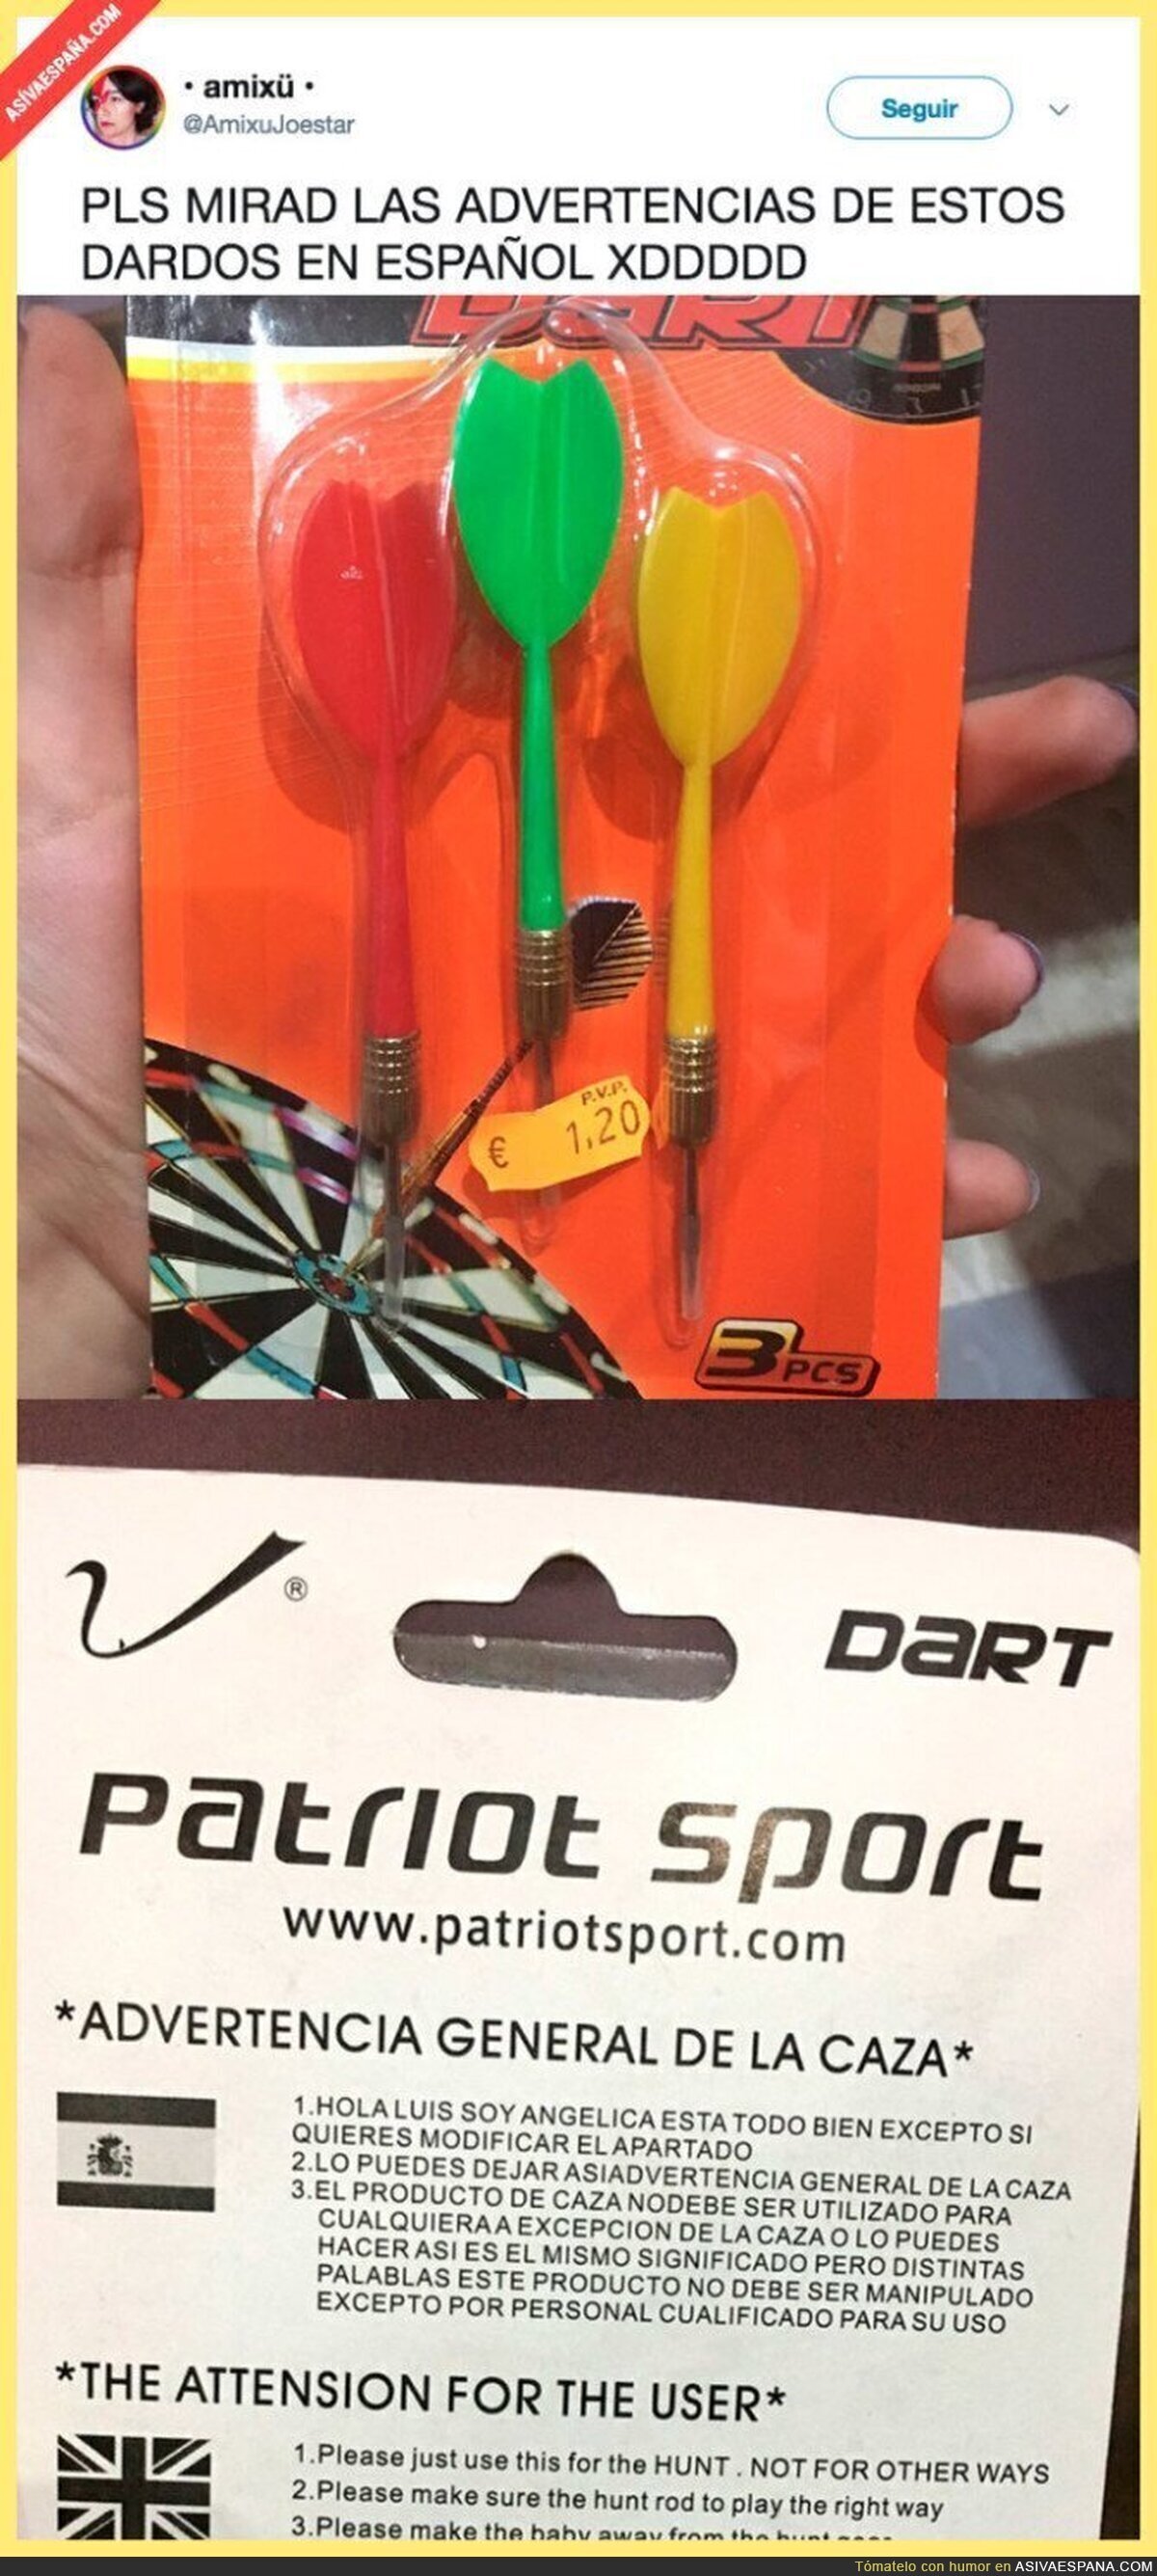 La divertida descripción de uso de estos dardos en español